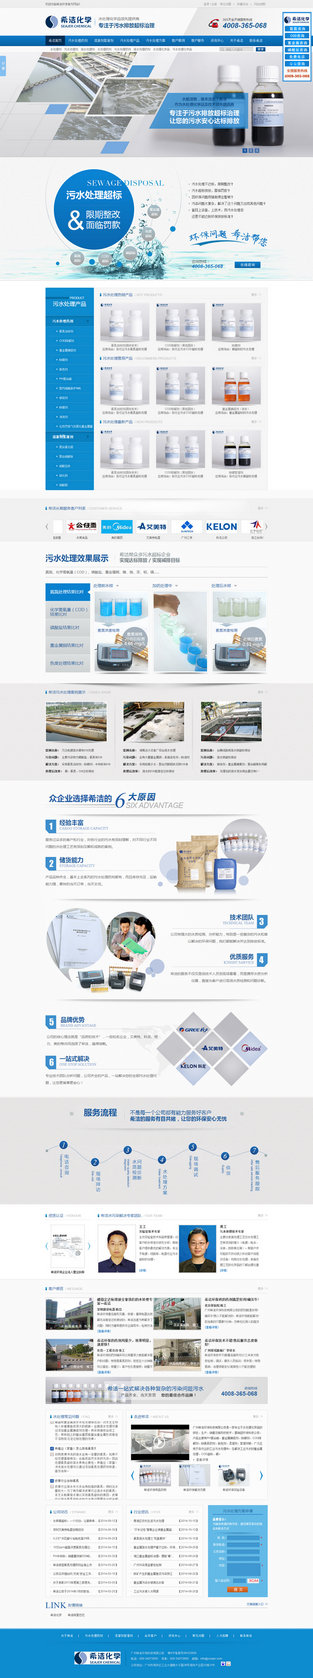 广州希洁环保营销型网站案例展示